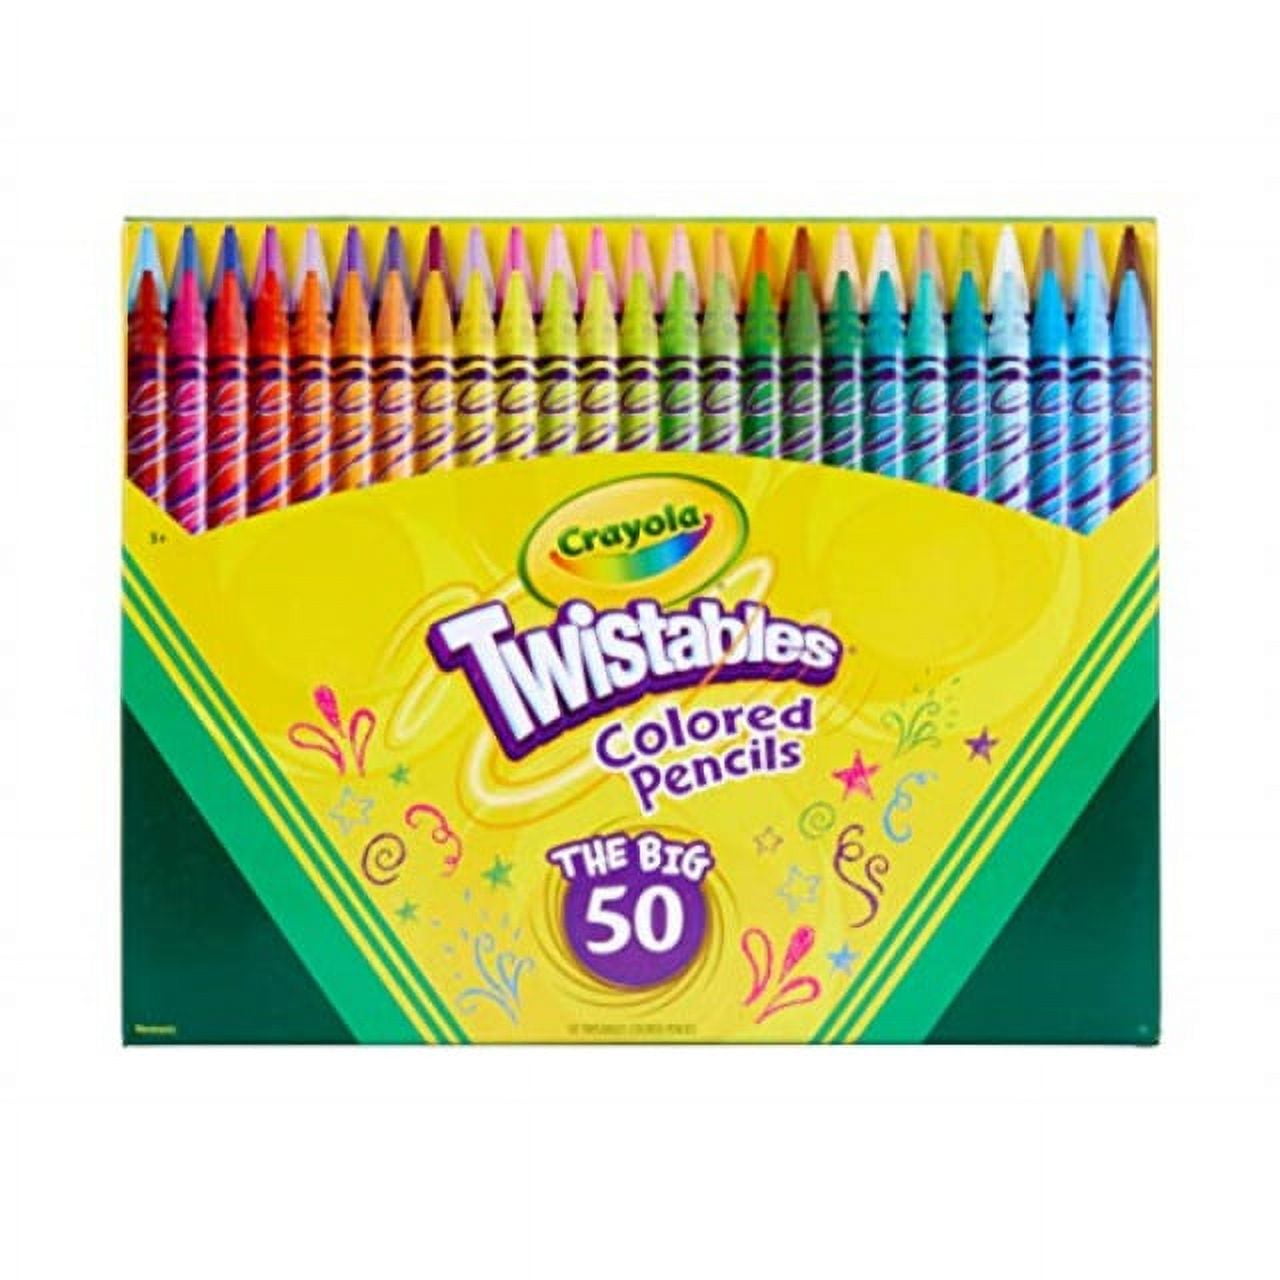 Crayola Twistables - Colored Pencils vs Crayons 